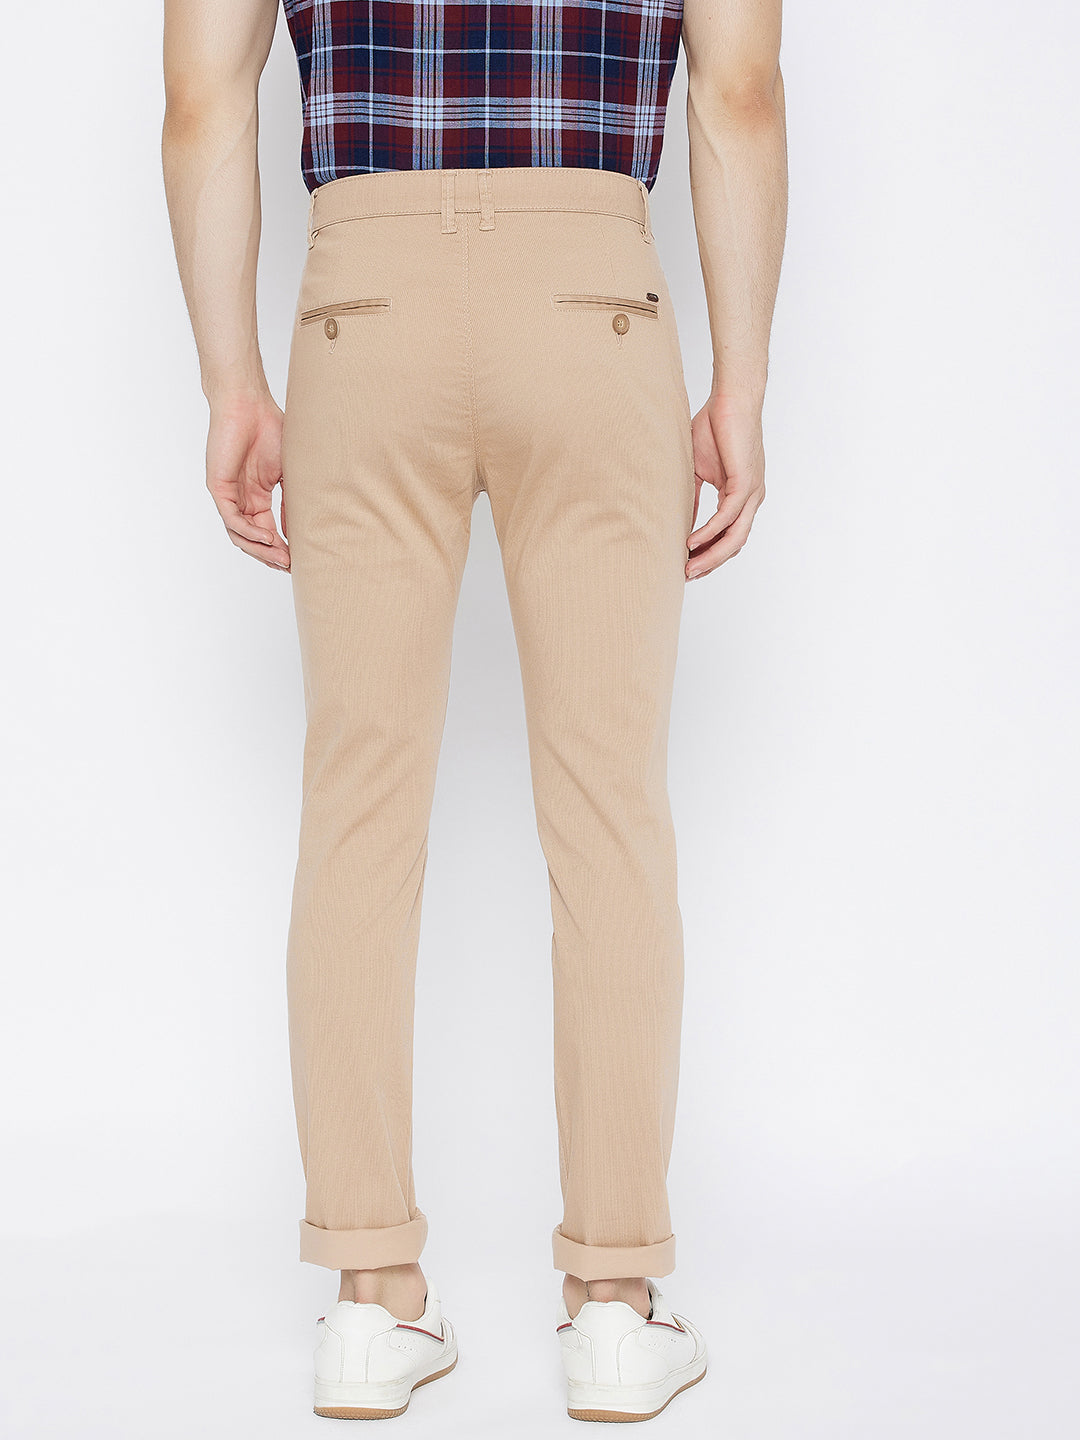 Beige Printed Slim Fit Trousers - Men Trousers